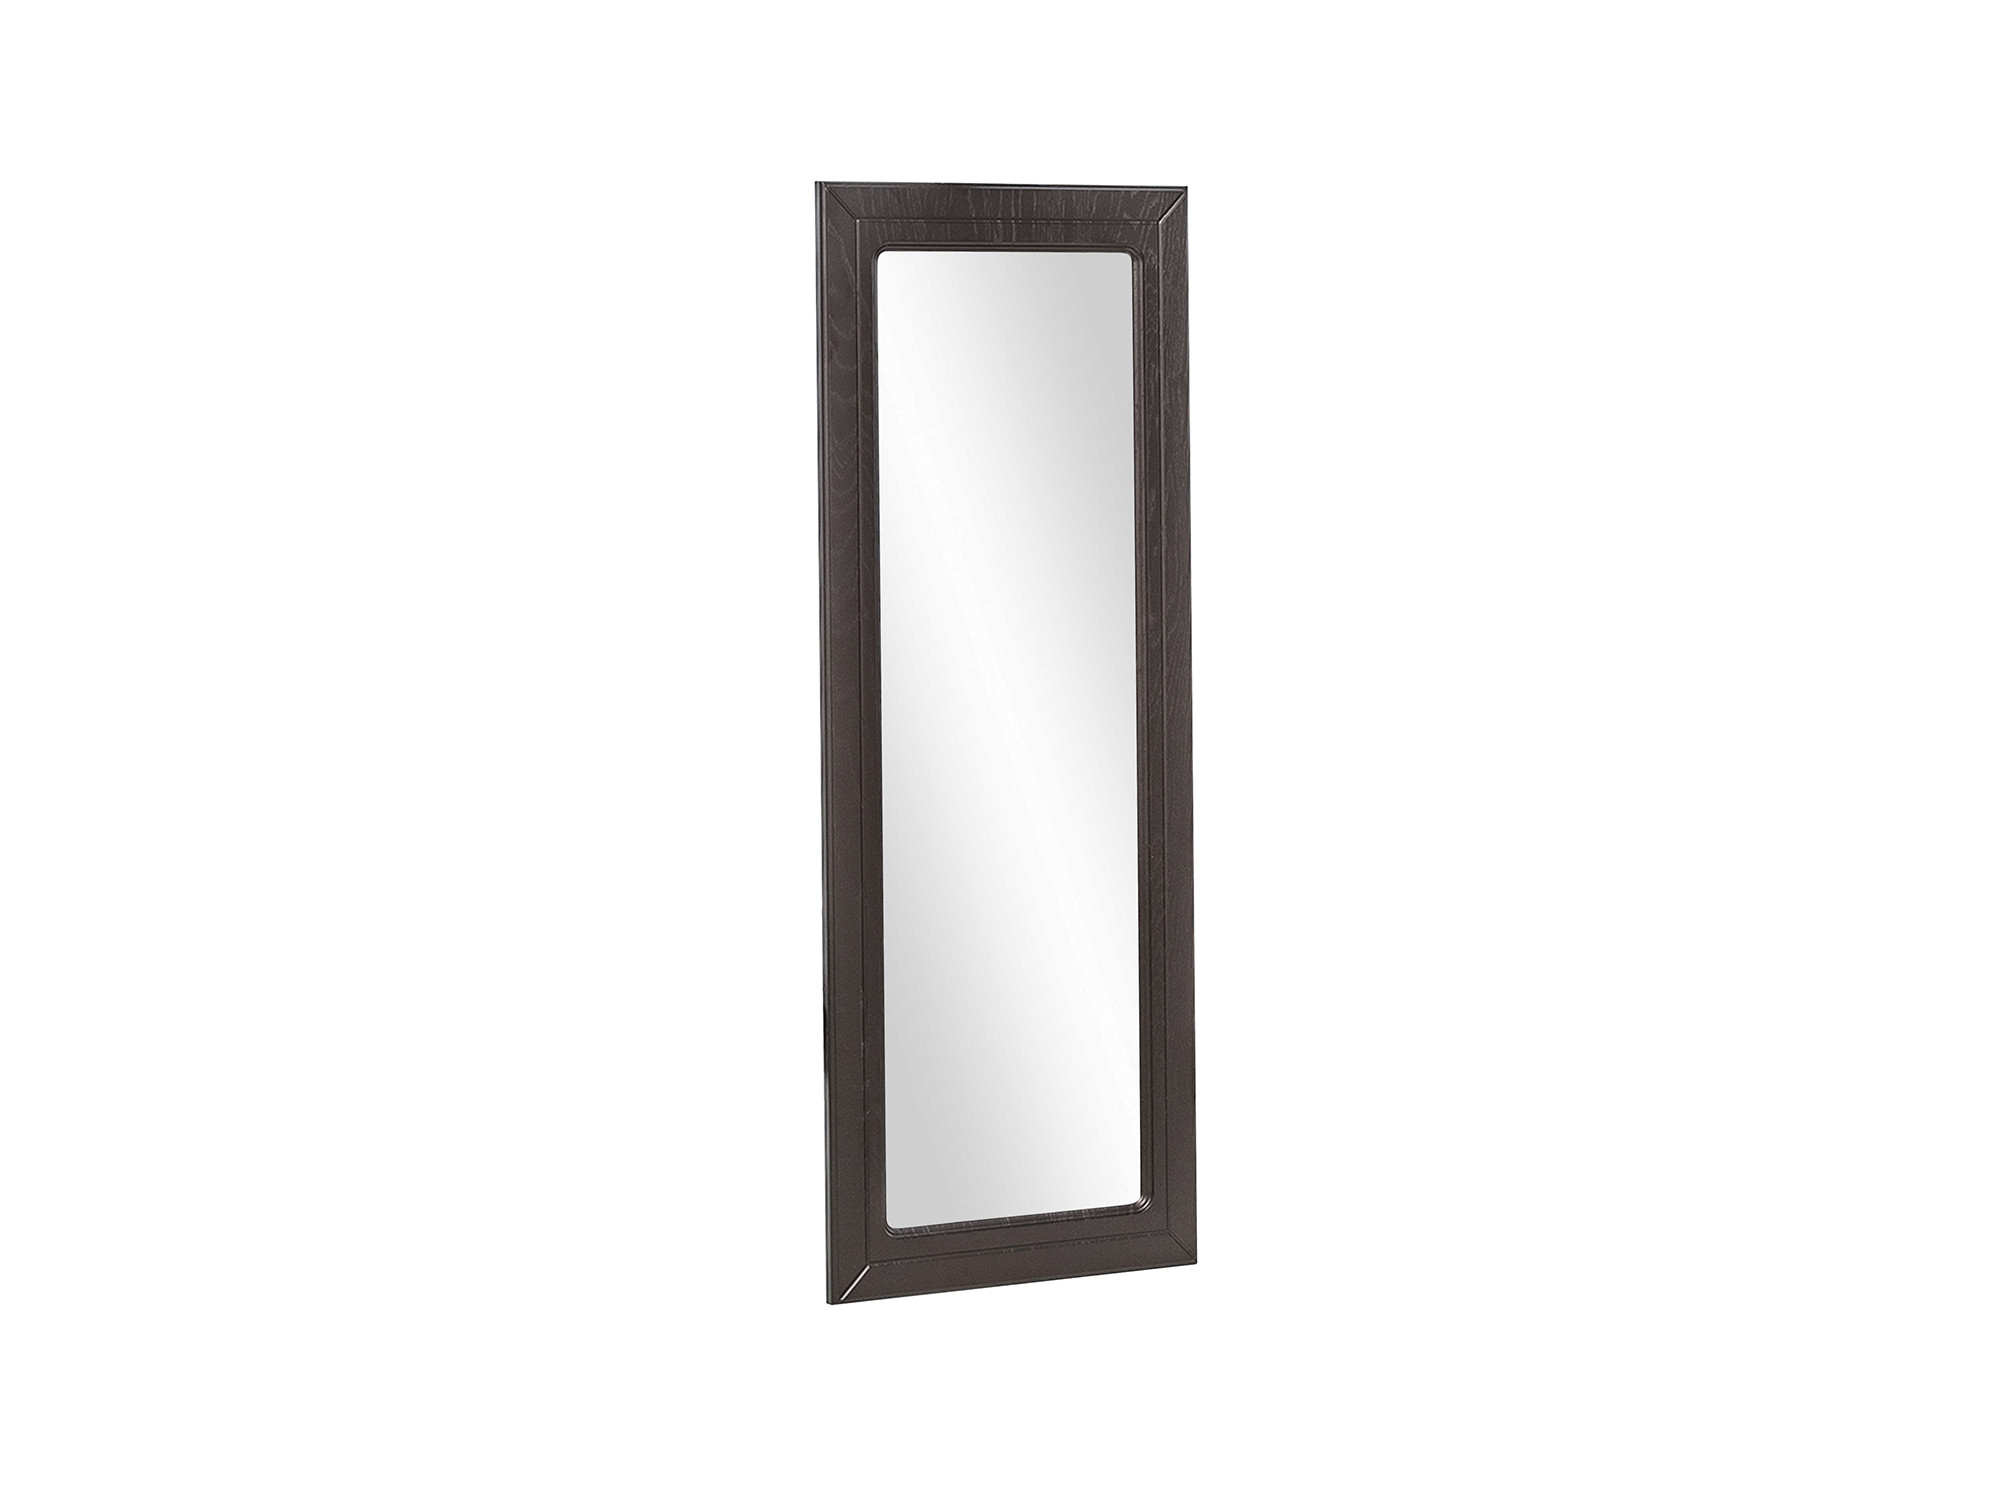 Зеркало навесное Leset Локи 3 Коричневый темный, МДФ зеркало навесное олимп мона зеркало профиль аруша венге